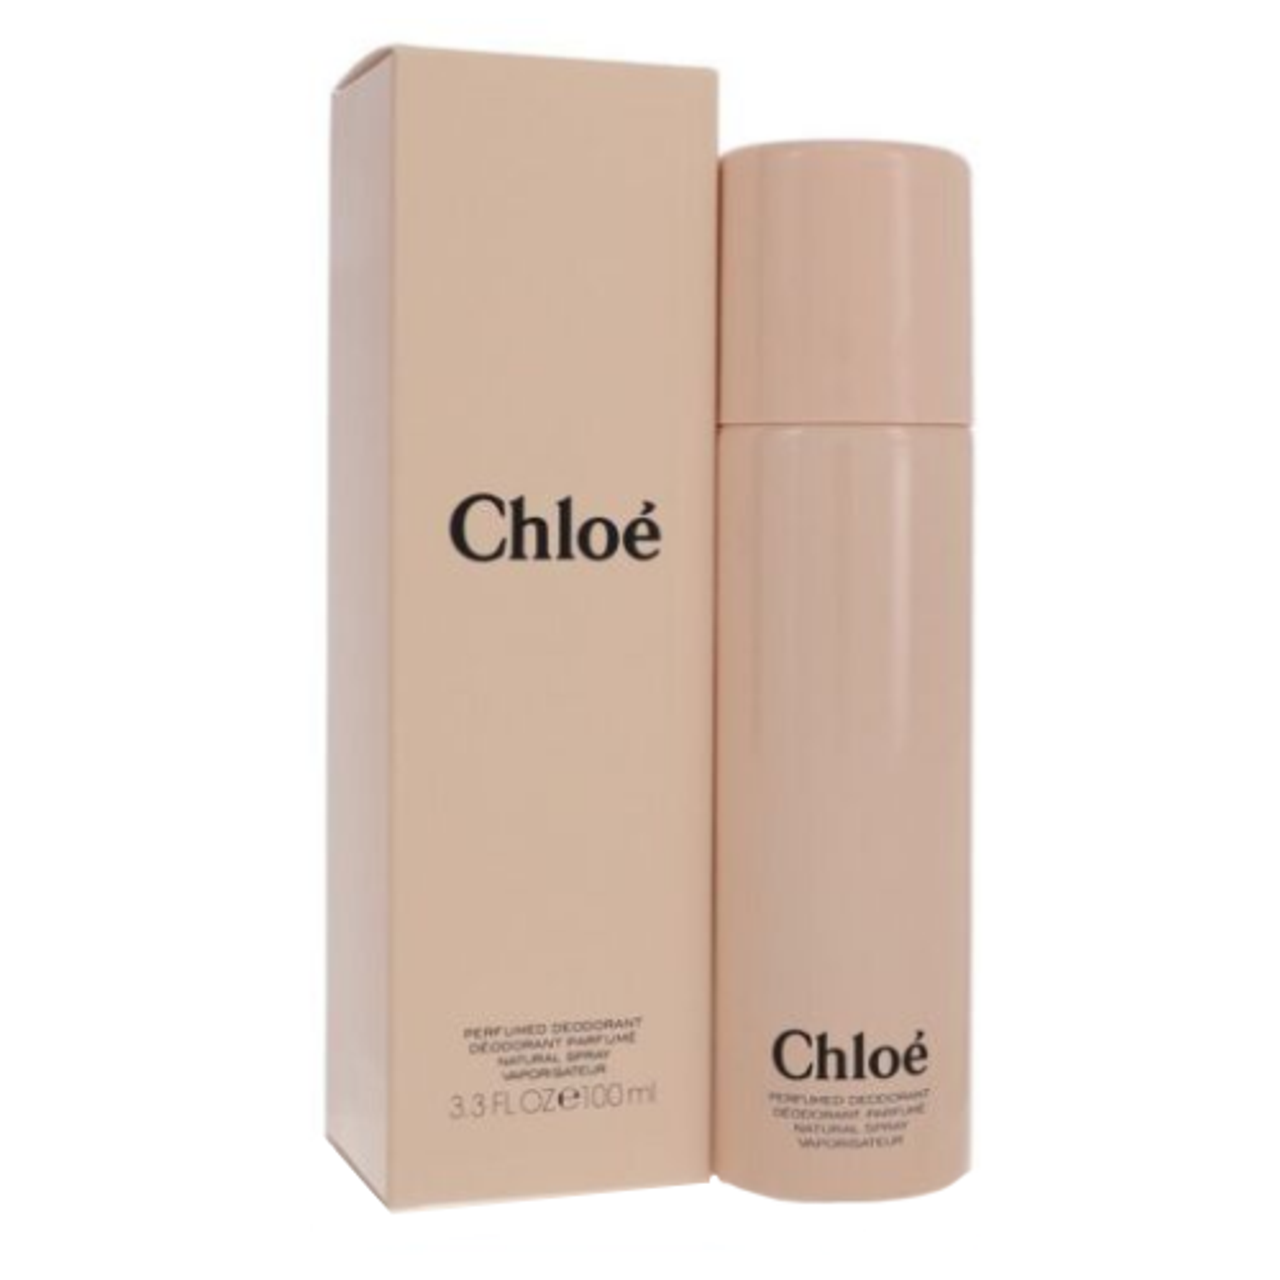 ekstremister gået vanvittigt Trives Chloe by Chloe 3.3 oz Perfumed Deodorant Spray for Women - ForeverLux